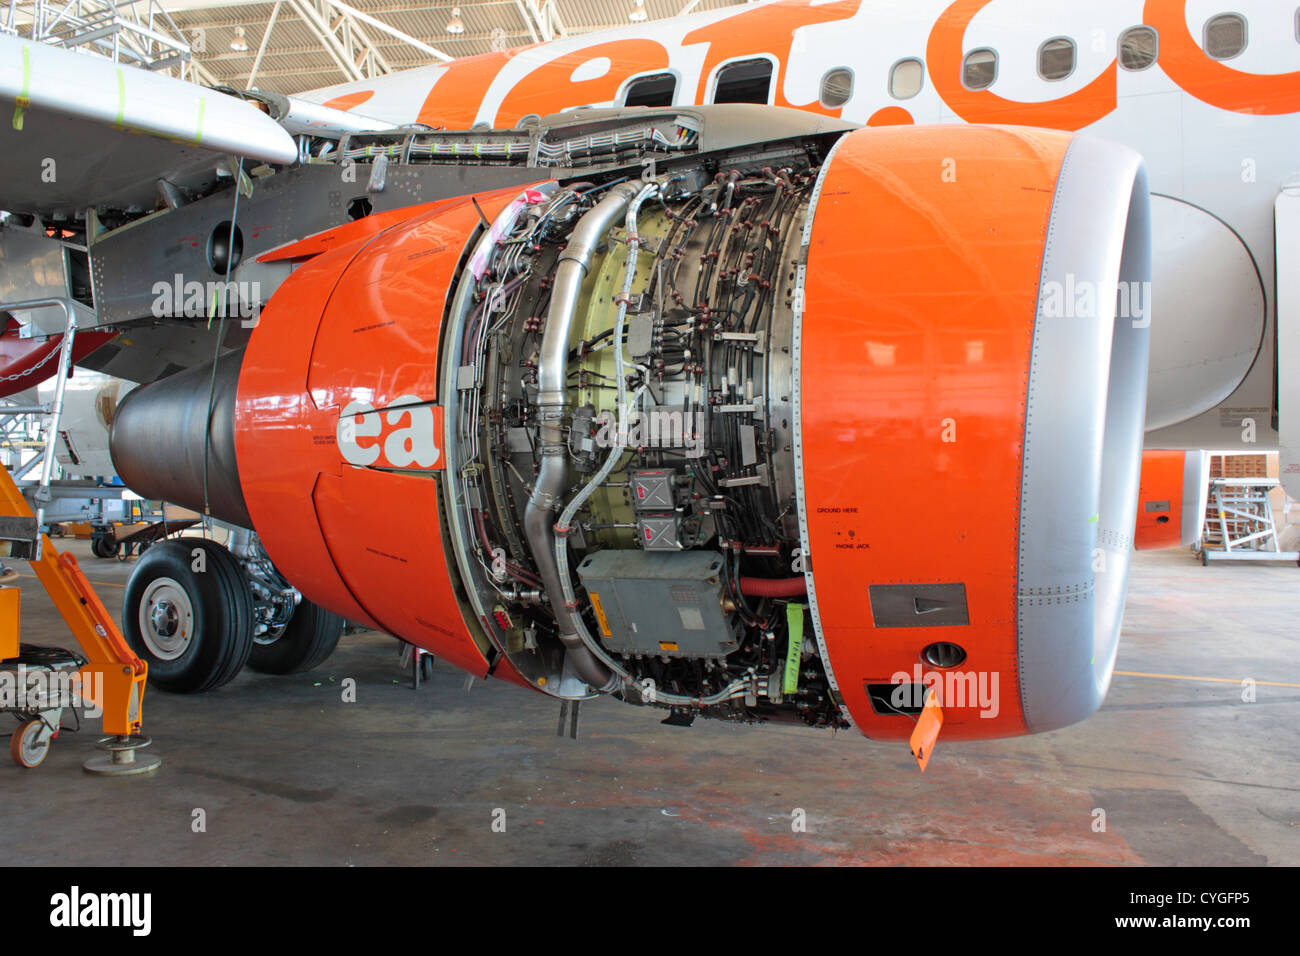 Il CFM56 getto turbofan motore su un easyJet Airbus A319 aereo di linea in manutenzione a SR Technics Malta Foto Stock